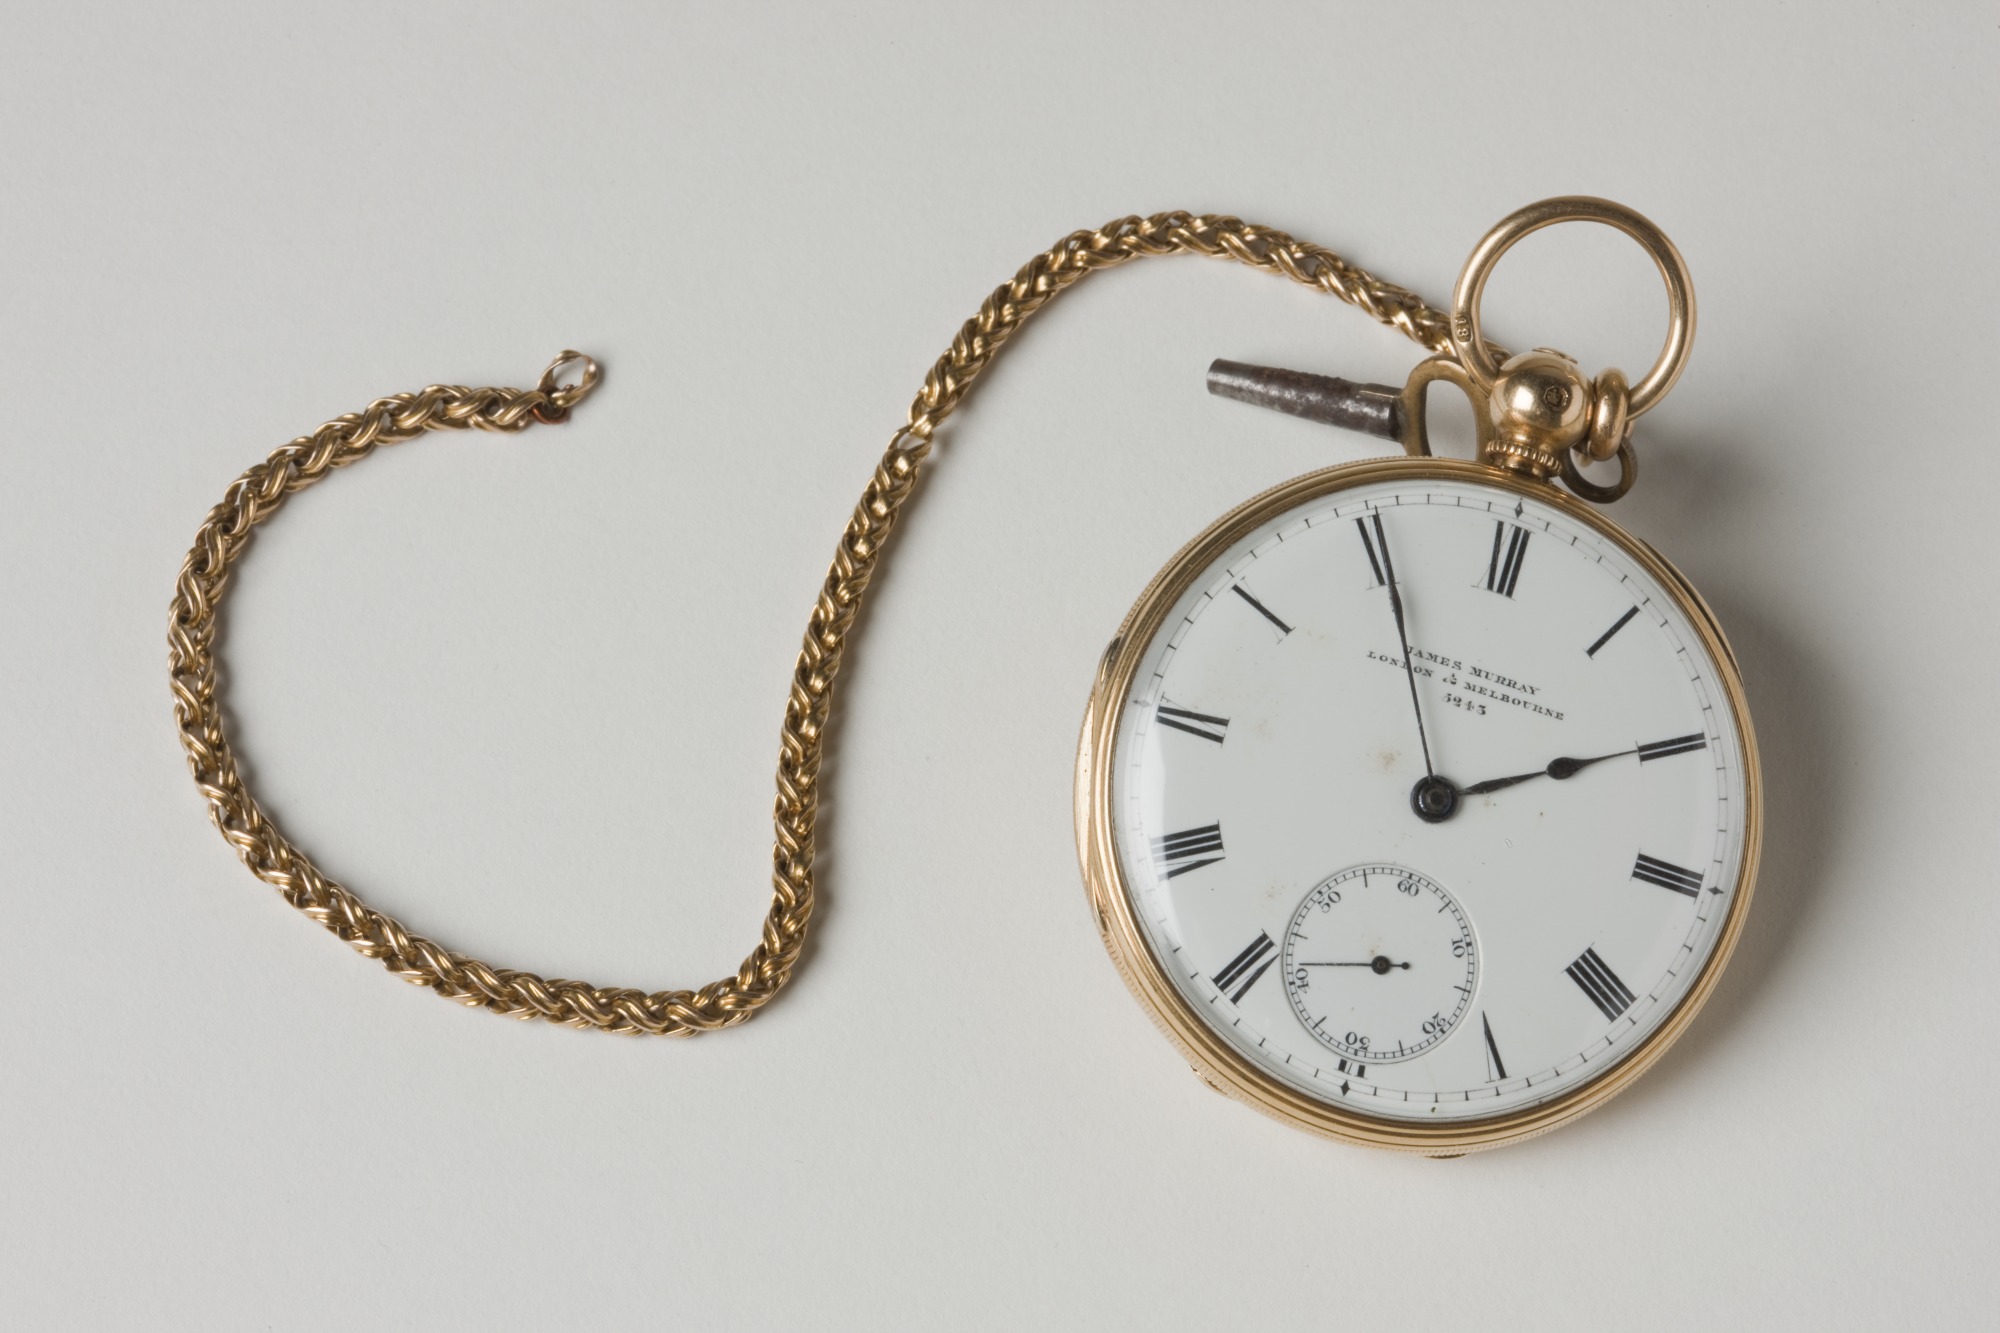 Gold pocket watch, which belonged to William John Wills.